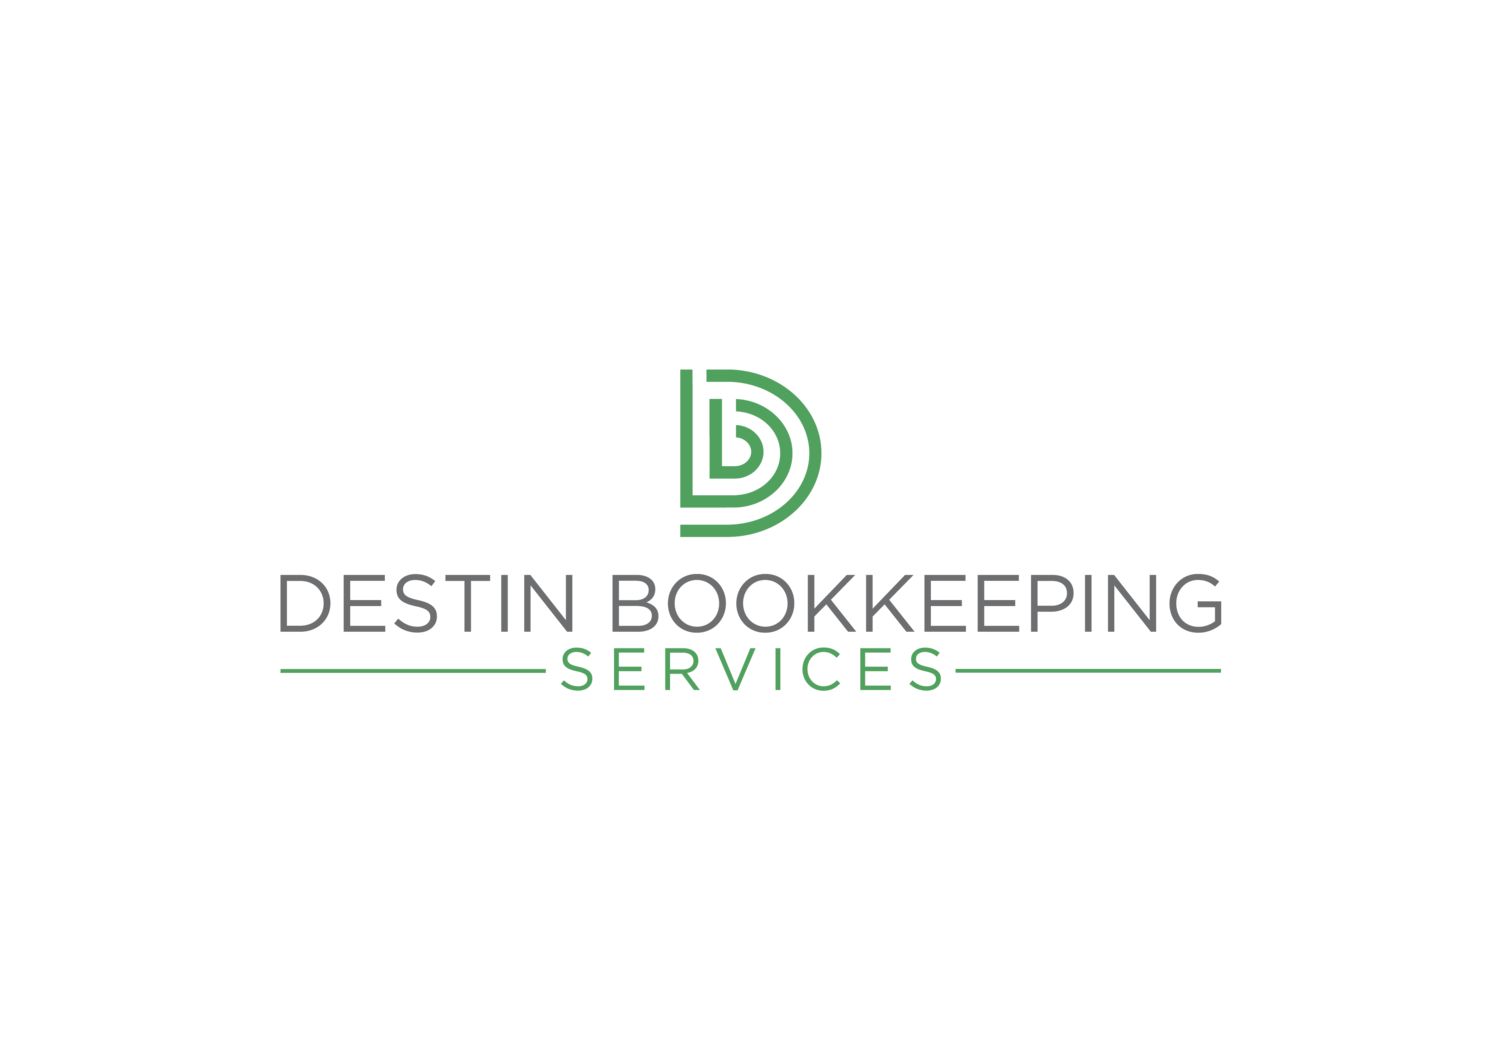 Destin Bookkeeping